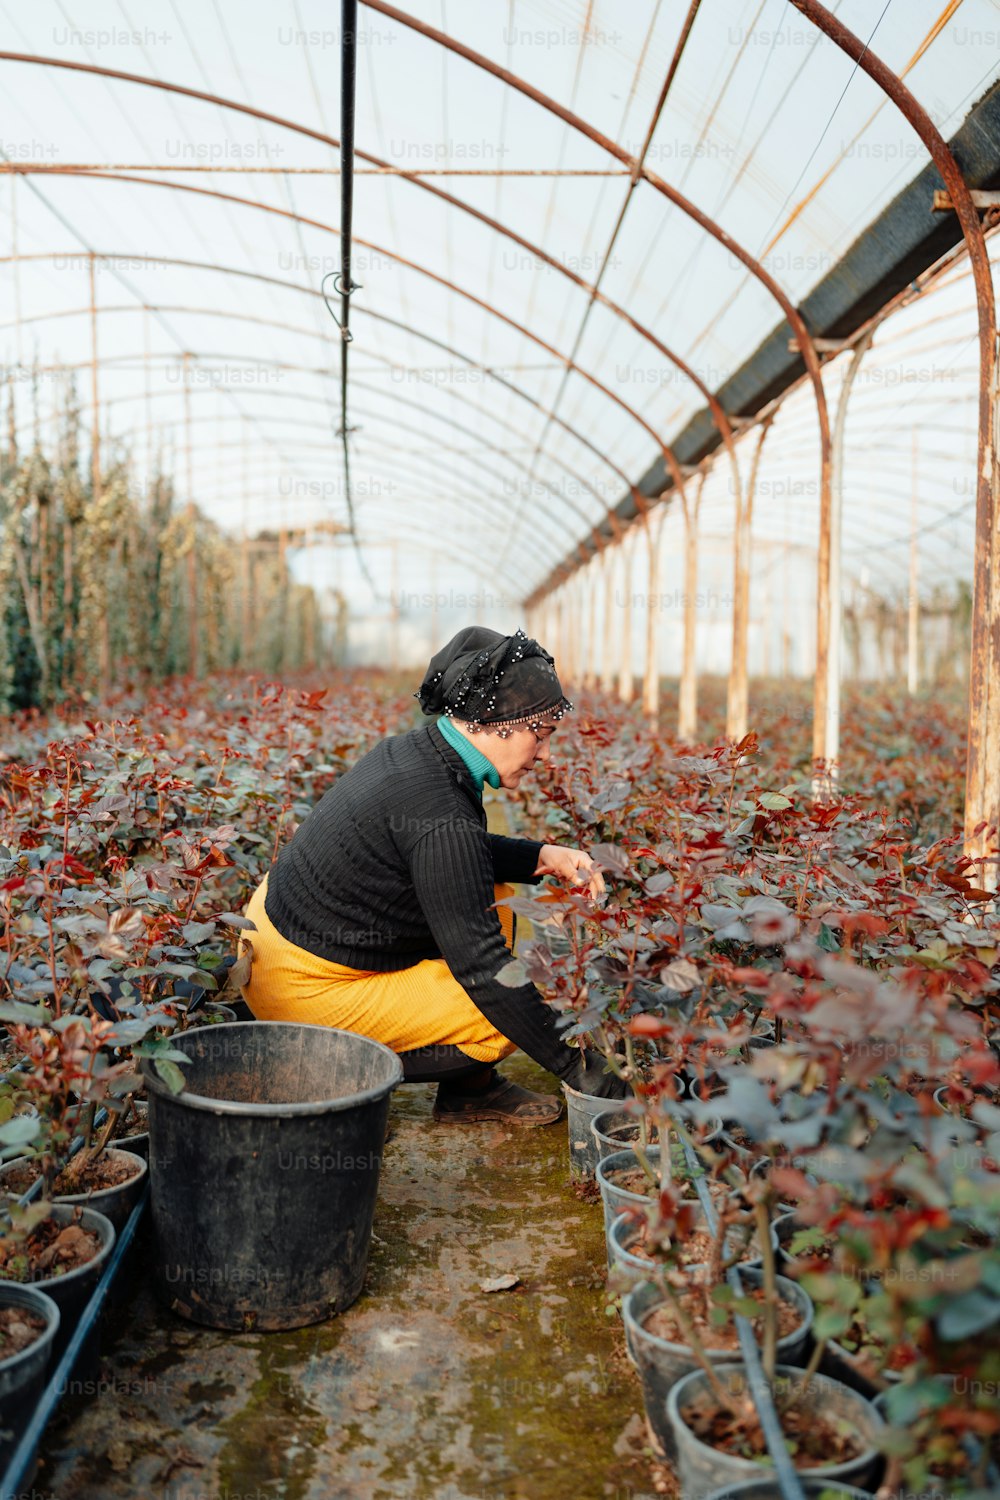 Una mujer arrodillada en un invernadero recogiendo plantas